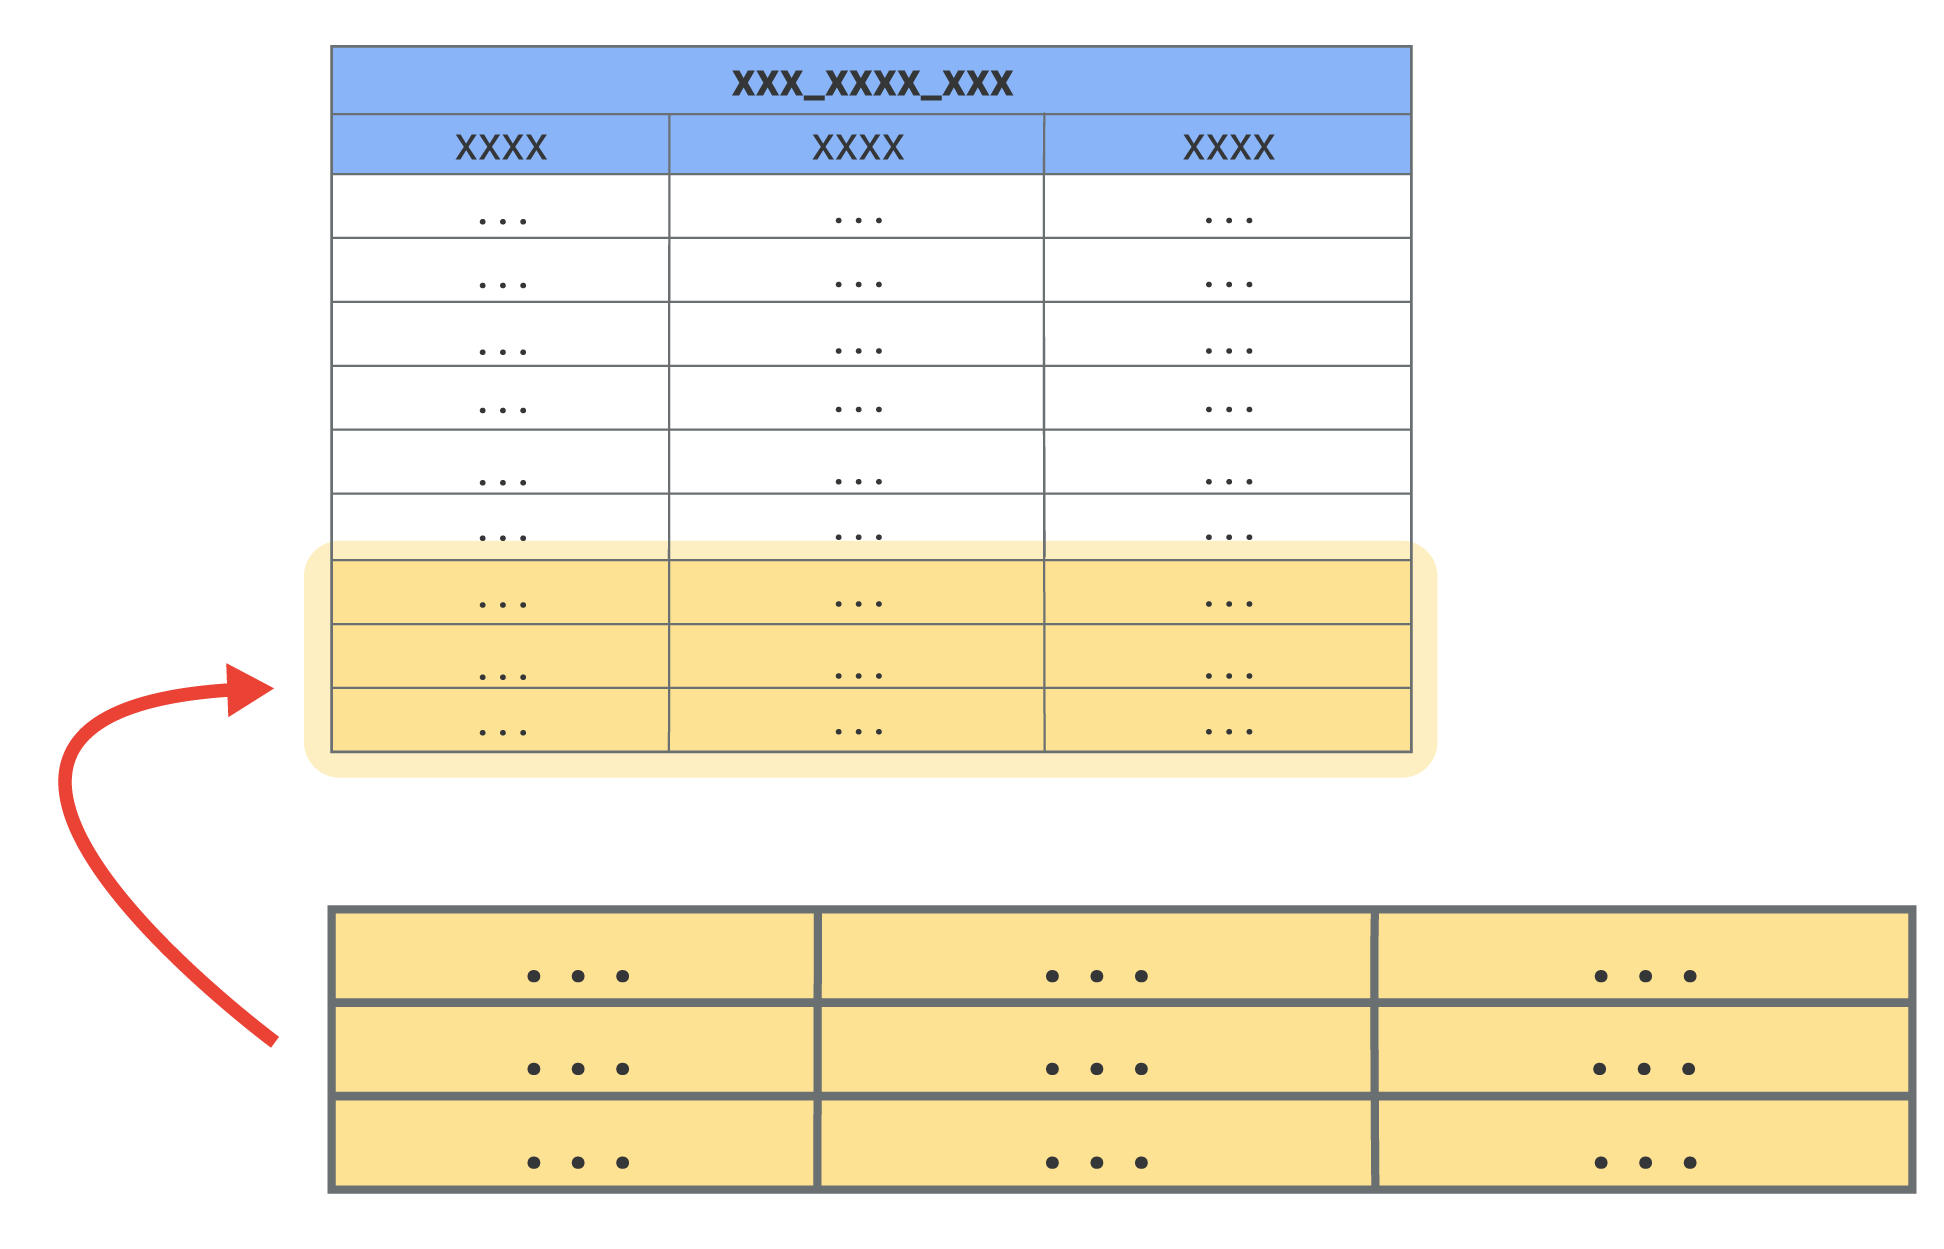 테이블에 적은 수의 새 행이 추가된 것을 보여주는 아래쪽 3개 행이 강조 표시된 큰 테이블입니다.